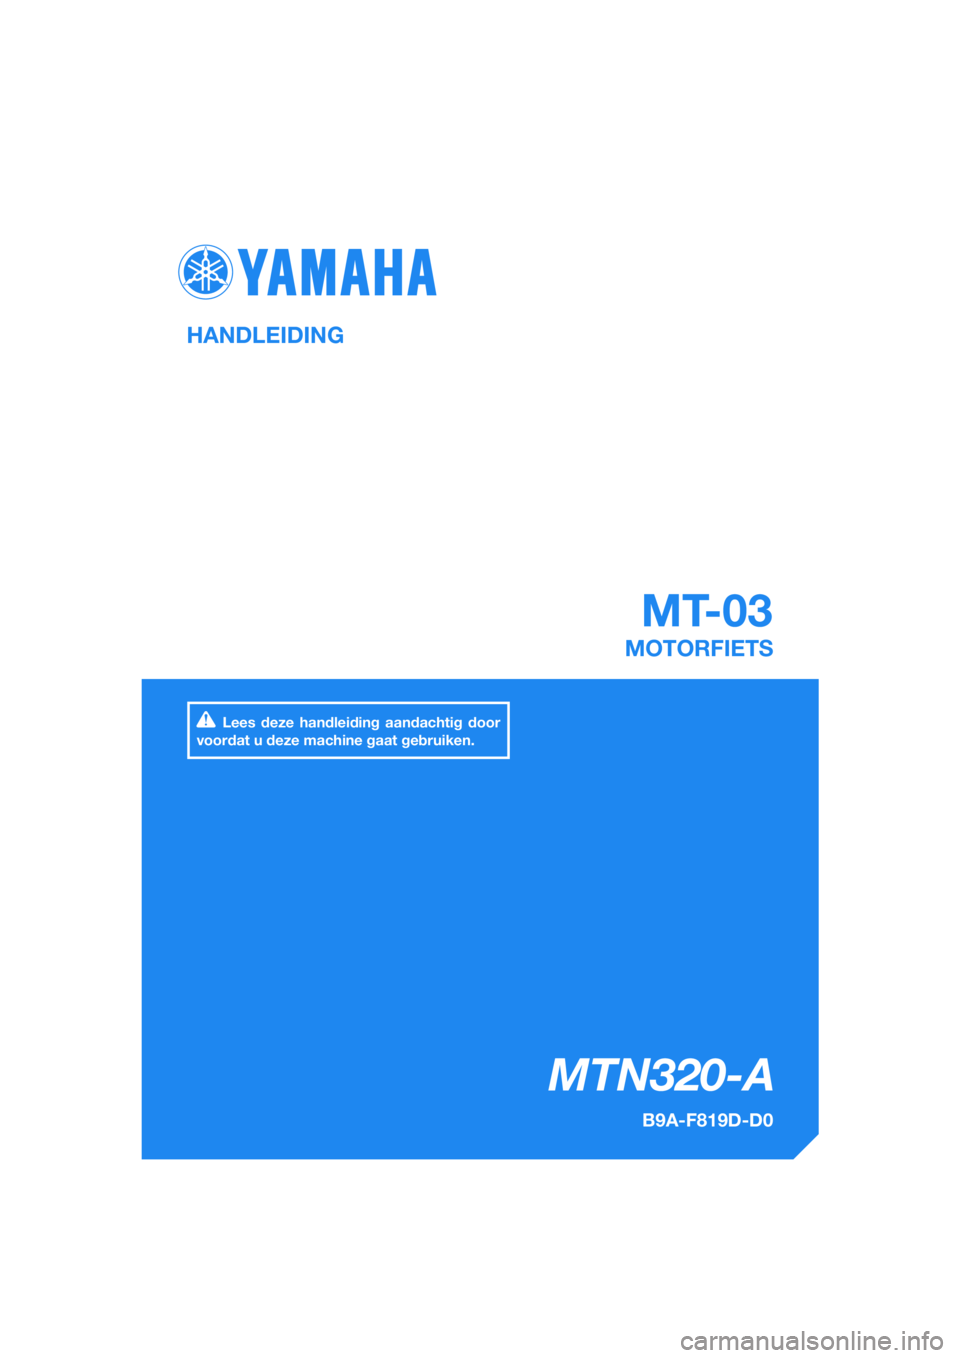 YAMAHA MT-03 2018  Instructieboekje (in Dutch) DIC183
MTN320-A
MT-03
HANDLEIDING
B9A-F819D-D0
MOTORFIETS
Lees deze handleiding aandachtig door 
voordat u deze machine gaat gebruiken.
[Dutch  (D)] 